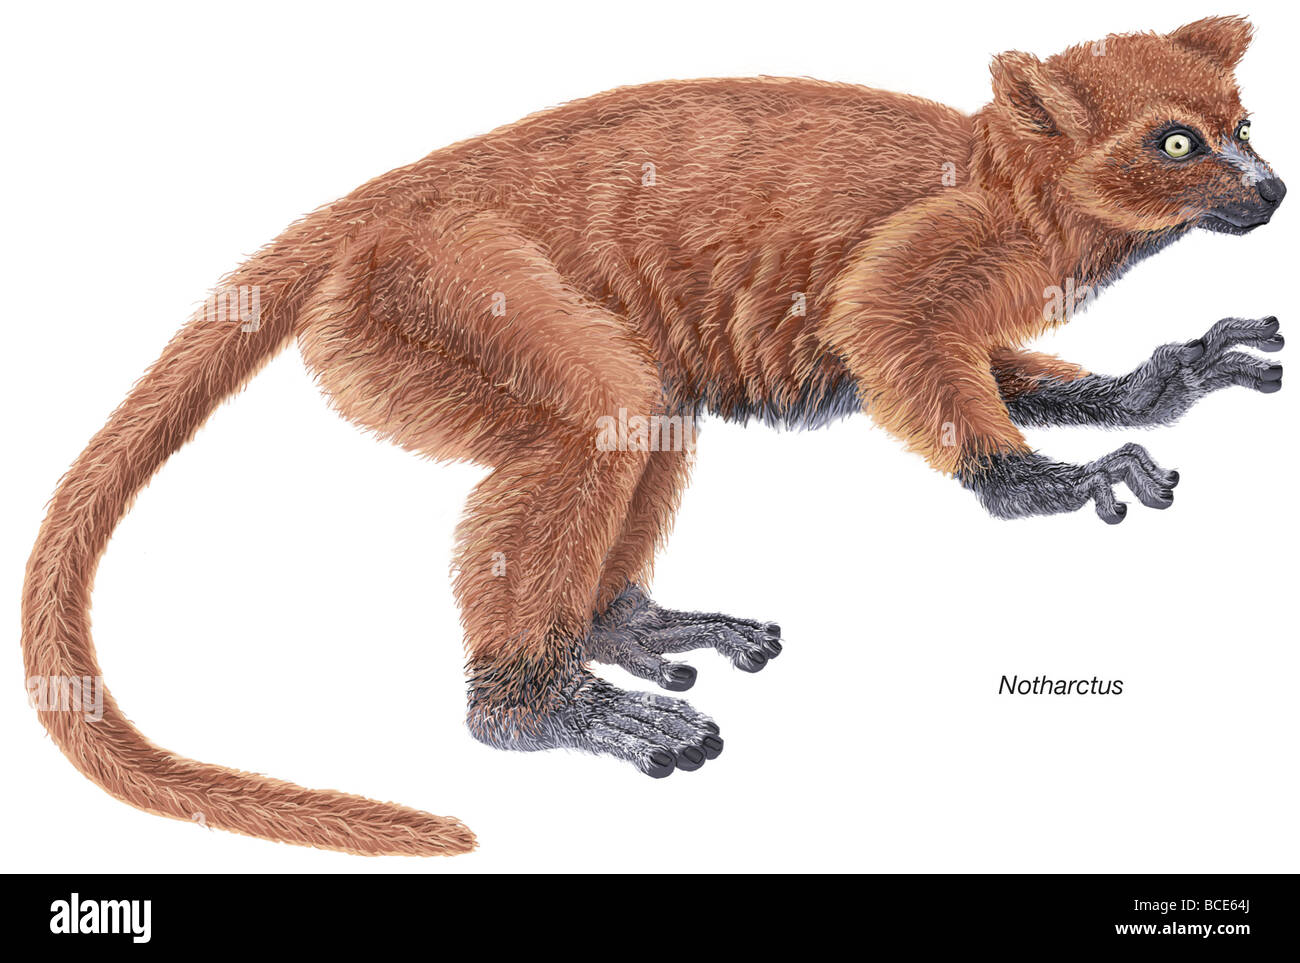 Notharctus, eine ausgestorbene Gattung der kleinen Primaten aus dem Eozän-Epoche, die viele Ähnlichkeiten mit modernen Lemuren teilt. Stockfoto